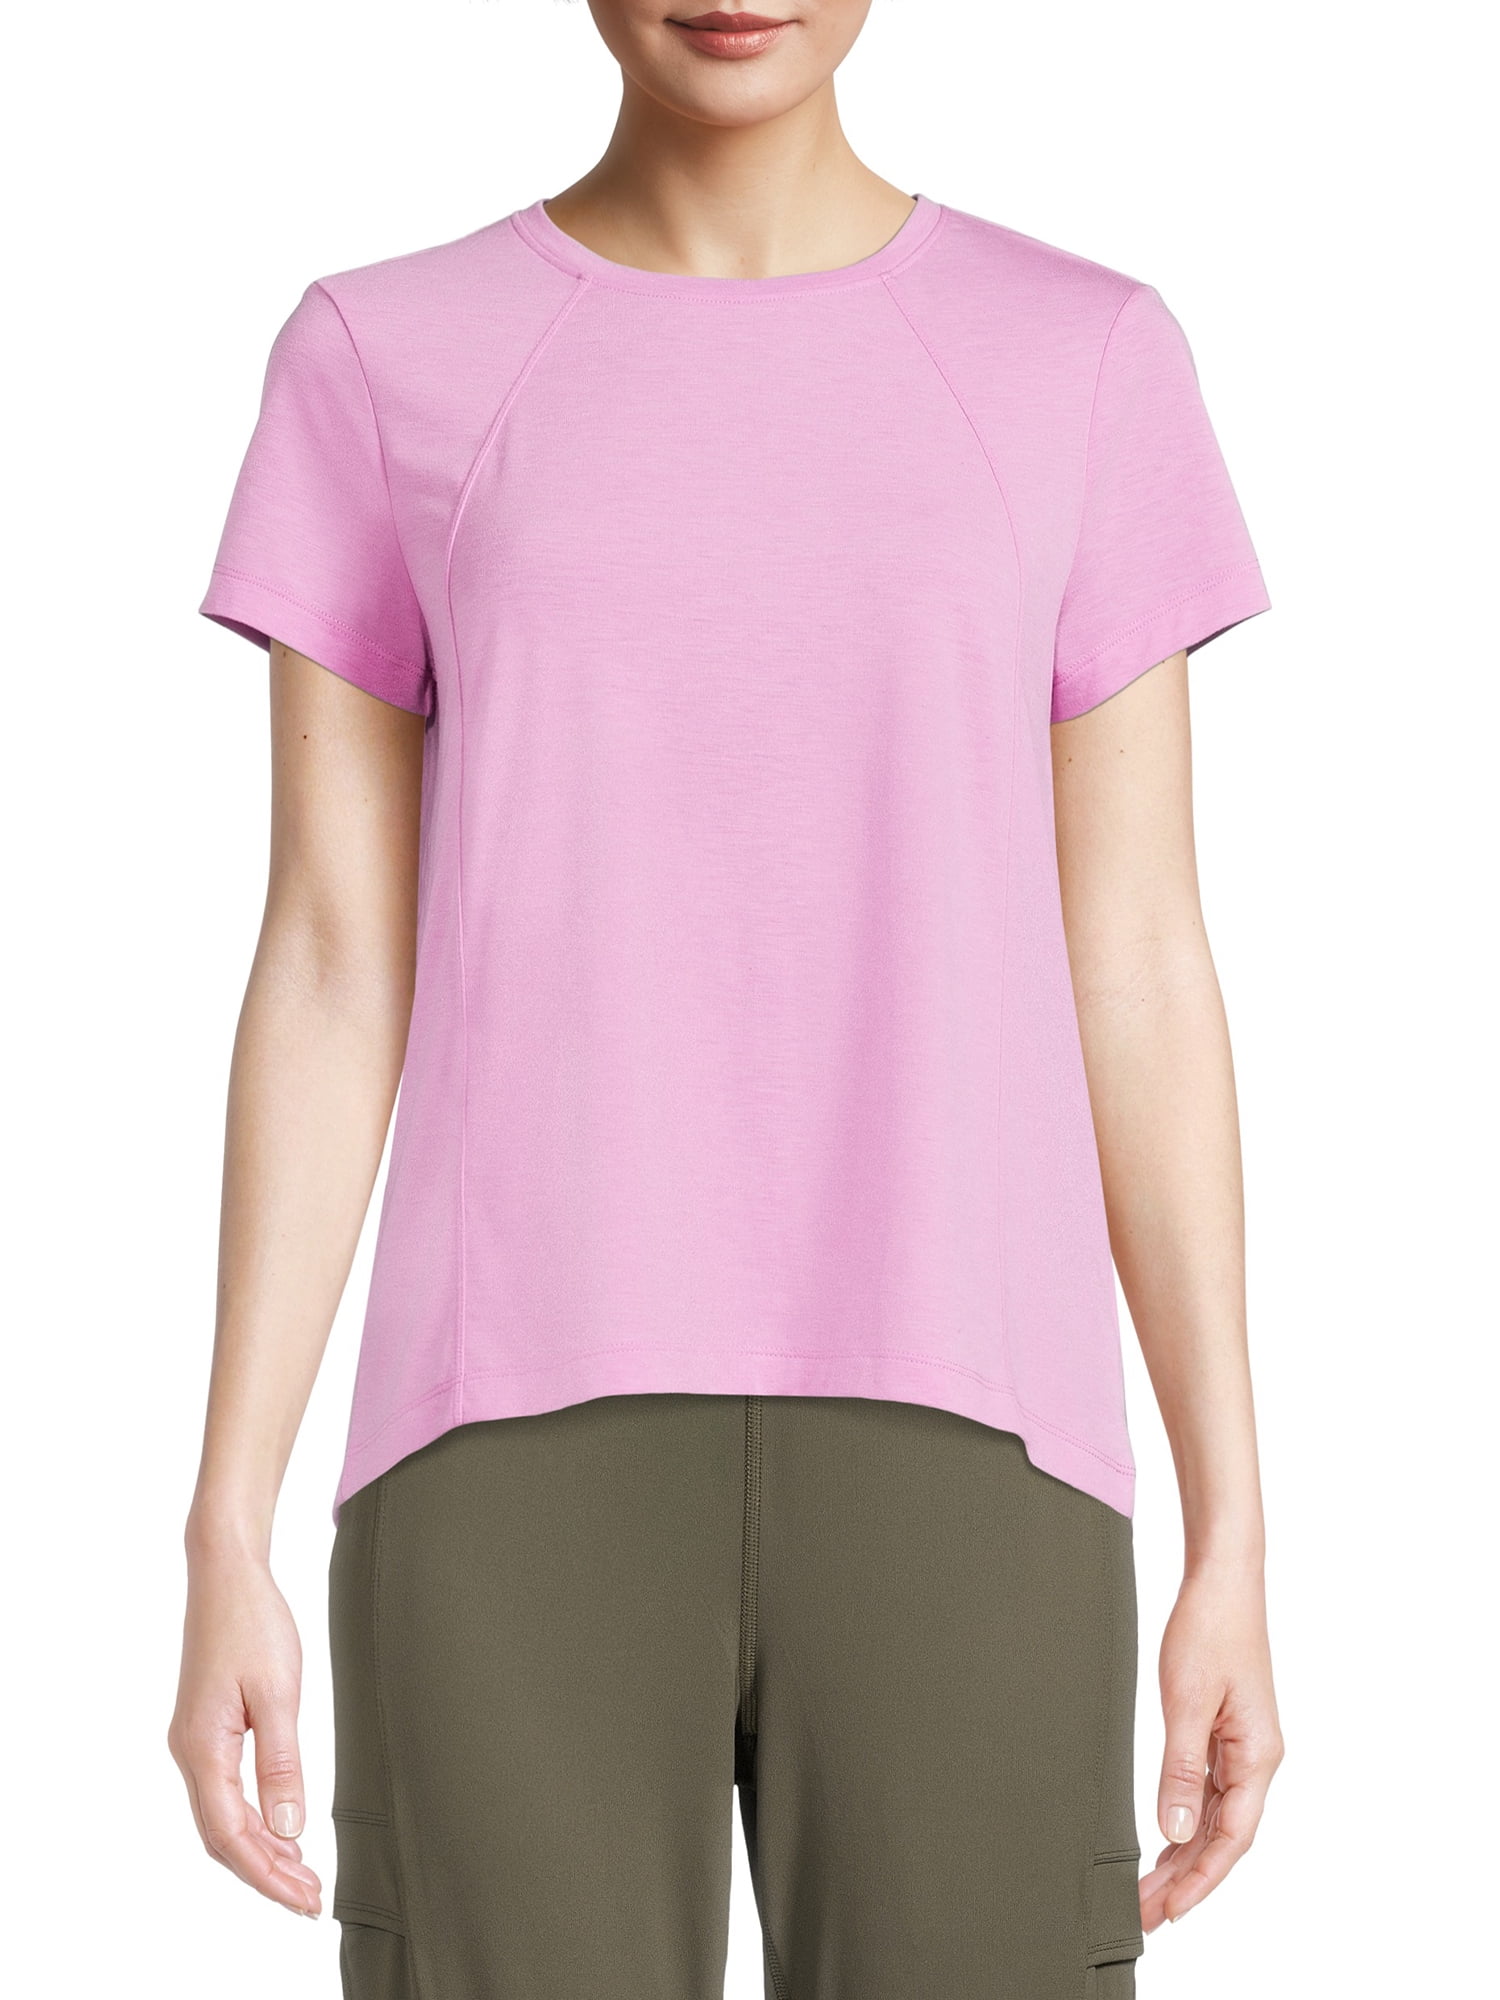 Avia Women's Short Sleeve T-Shirt, Sizes up to XXXL - Walmart.com